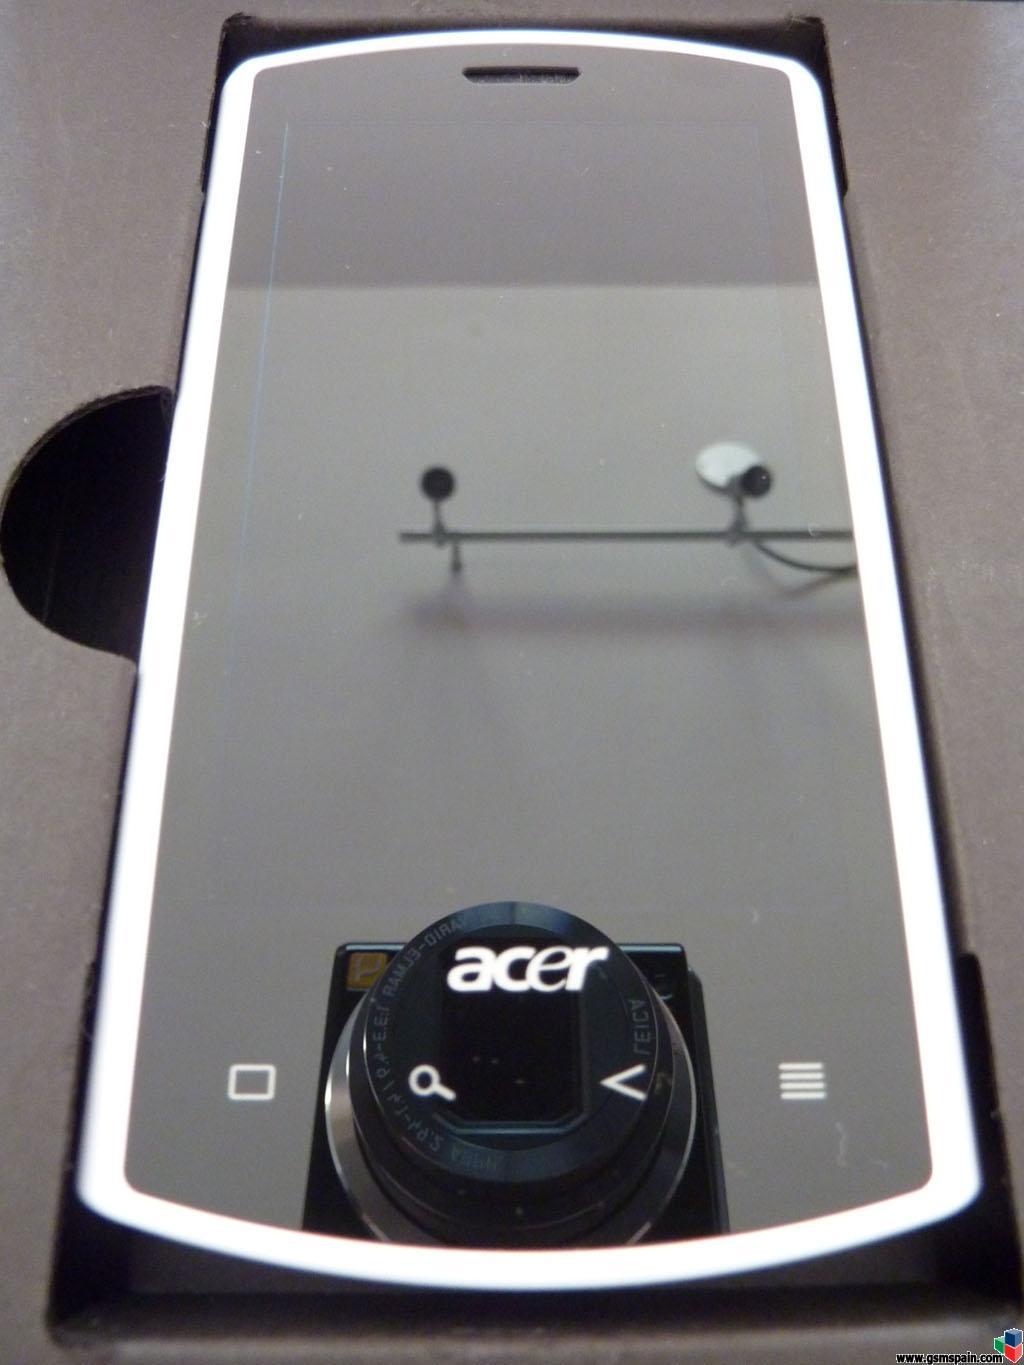 [VENDO] Acer Liquid E Blanco, Libre, actualizado a android 2.2 Froyo